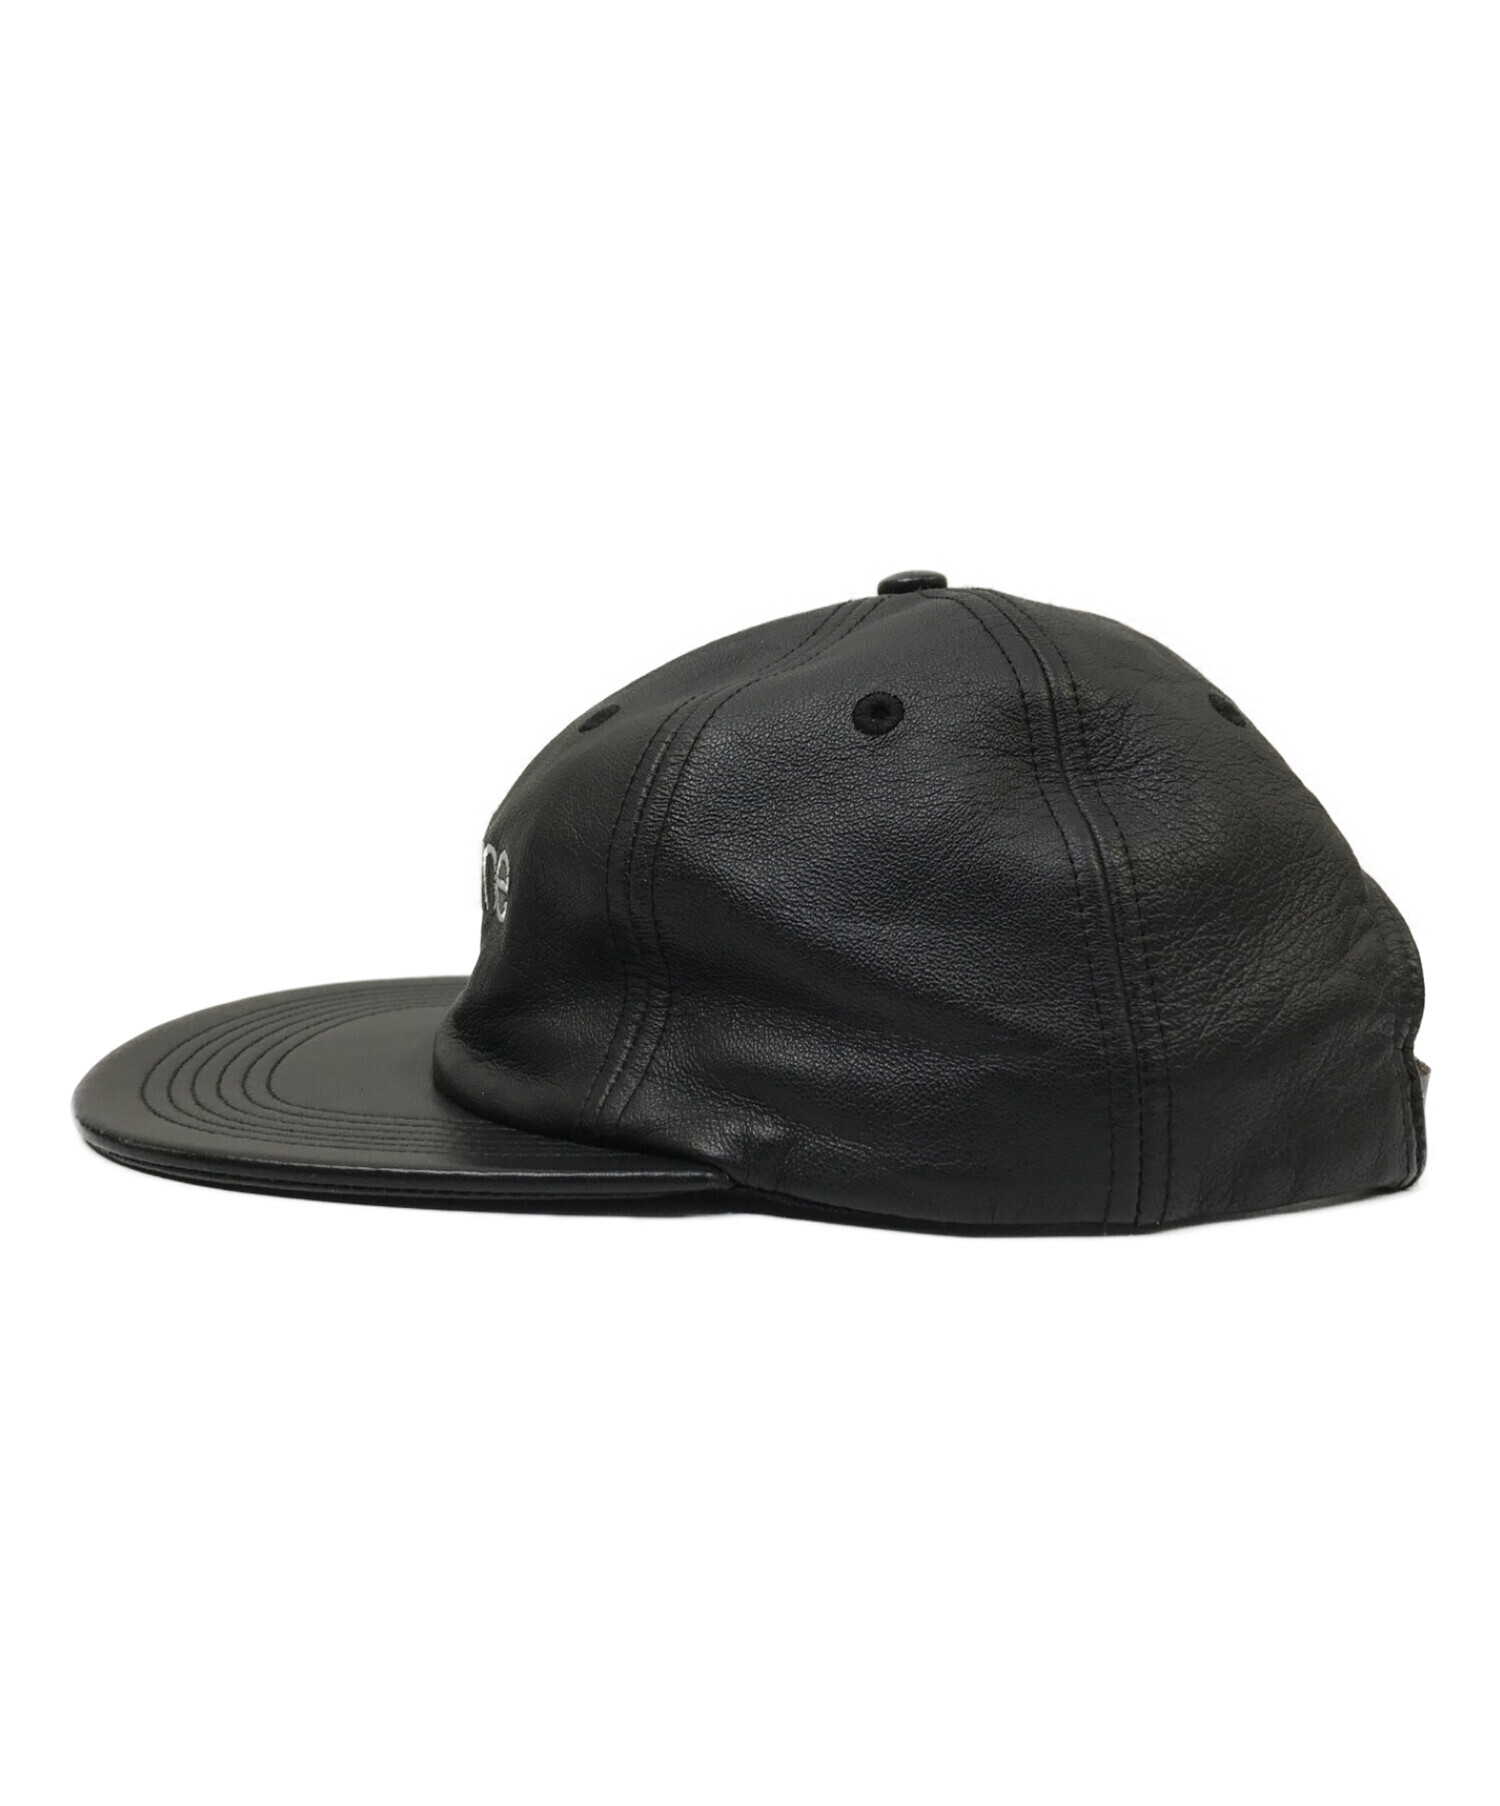 SUPREME (シュプリーム) LEATHER CLASSIC LOGO 6 PANEL CAP ブラック